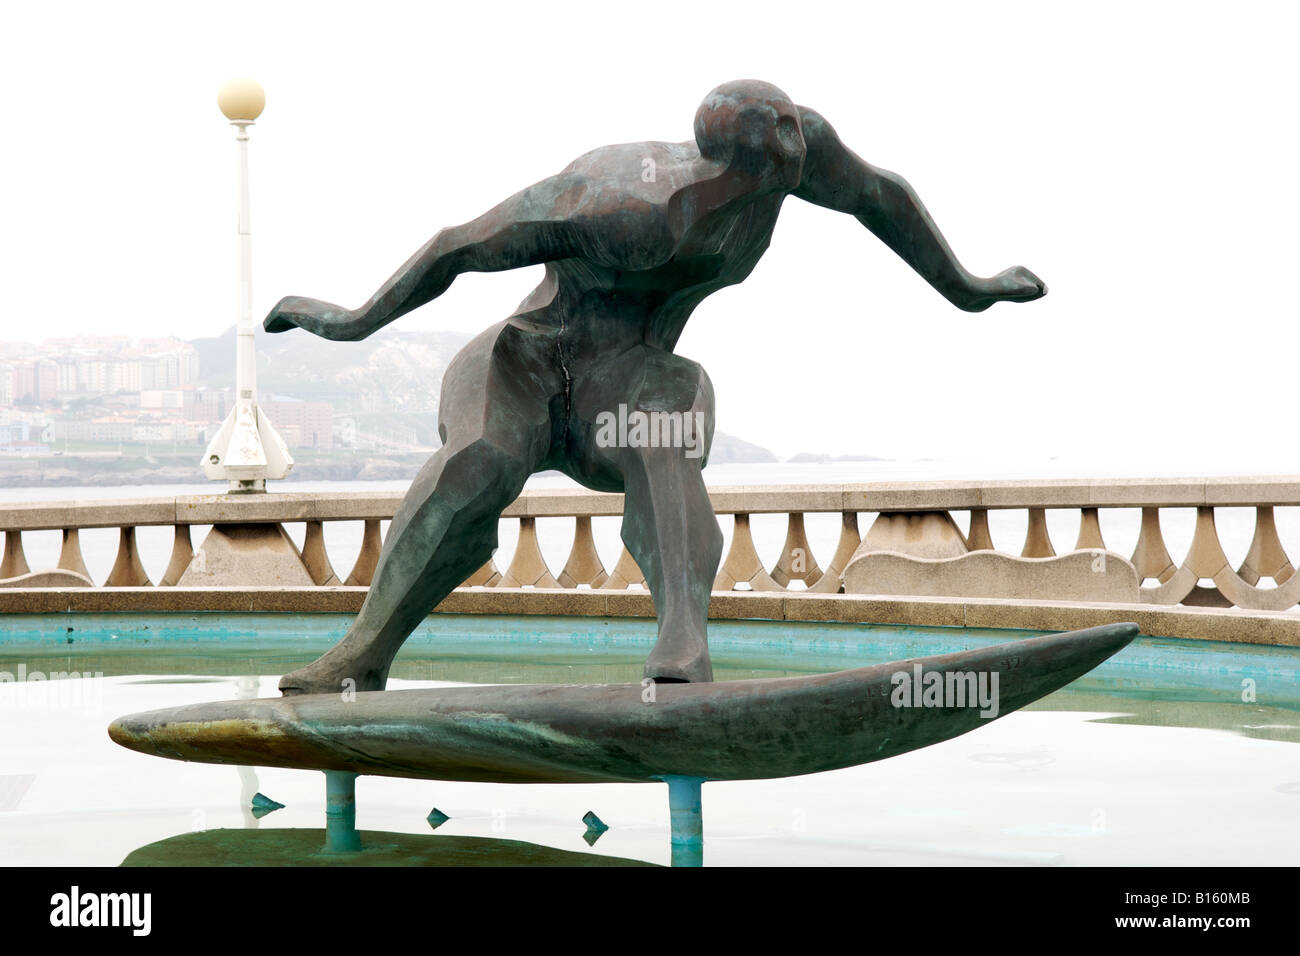 Sculpture d'un surfer le long de la promenade de la ville de La Corogne en Espagne, la région Galice. Banque D'Images